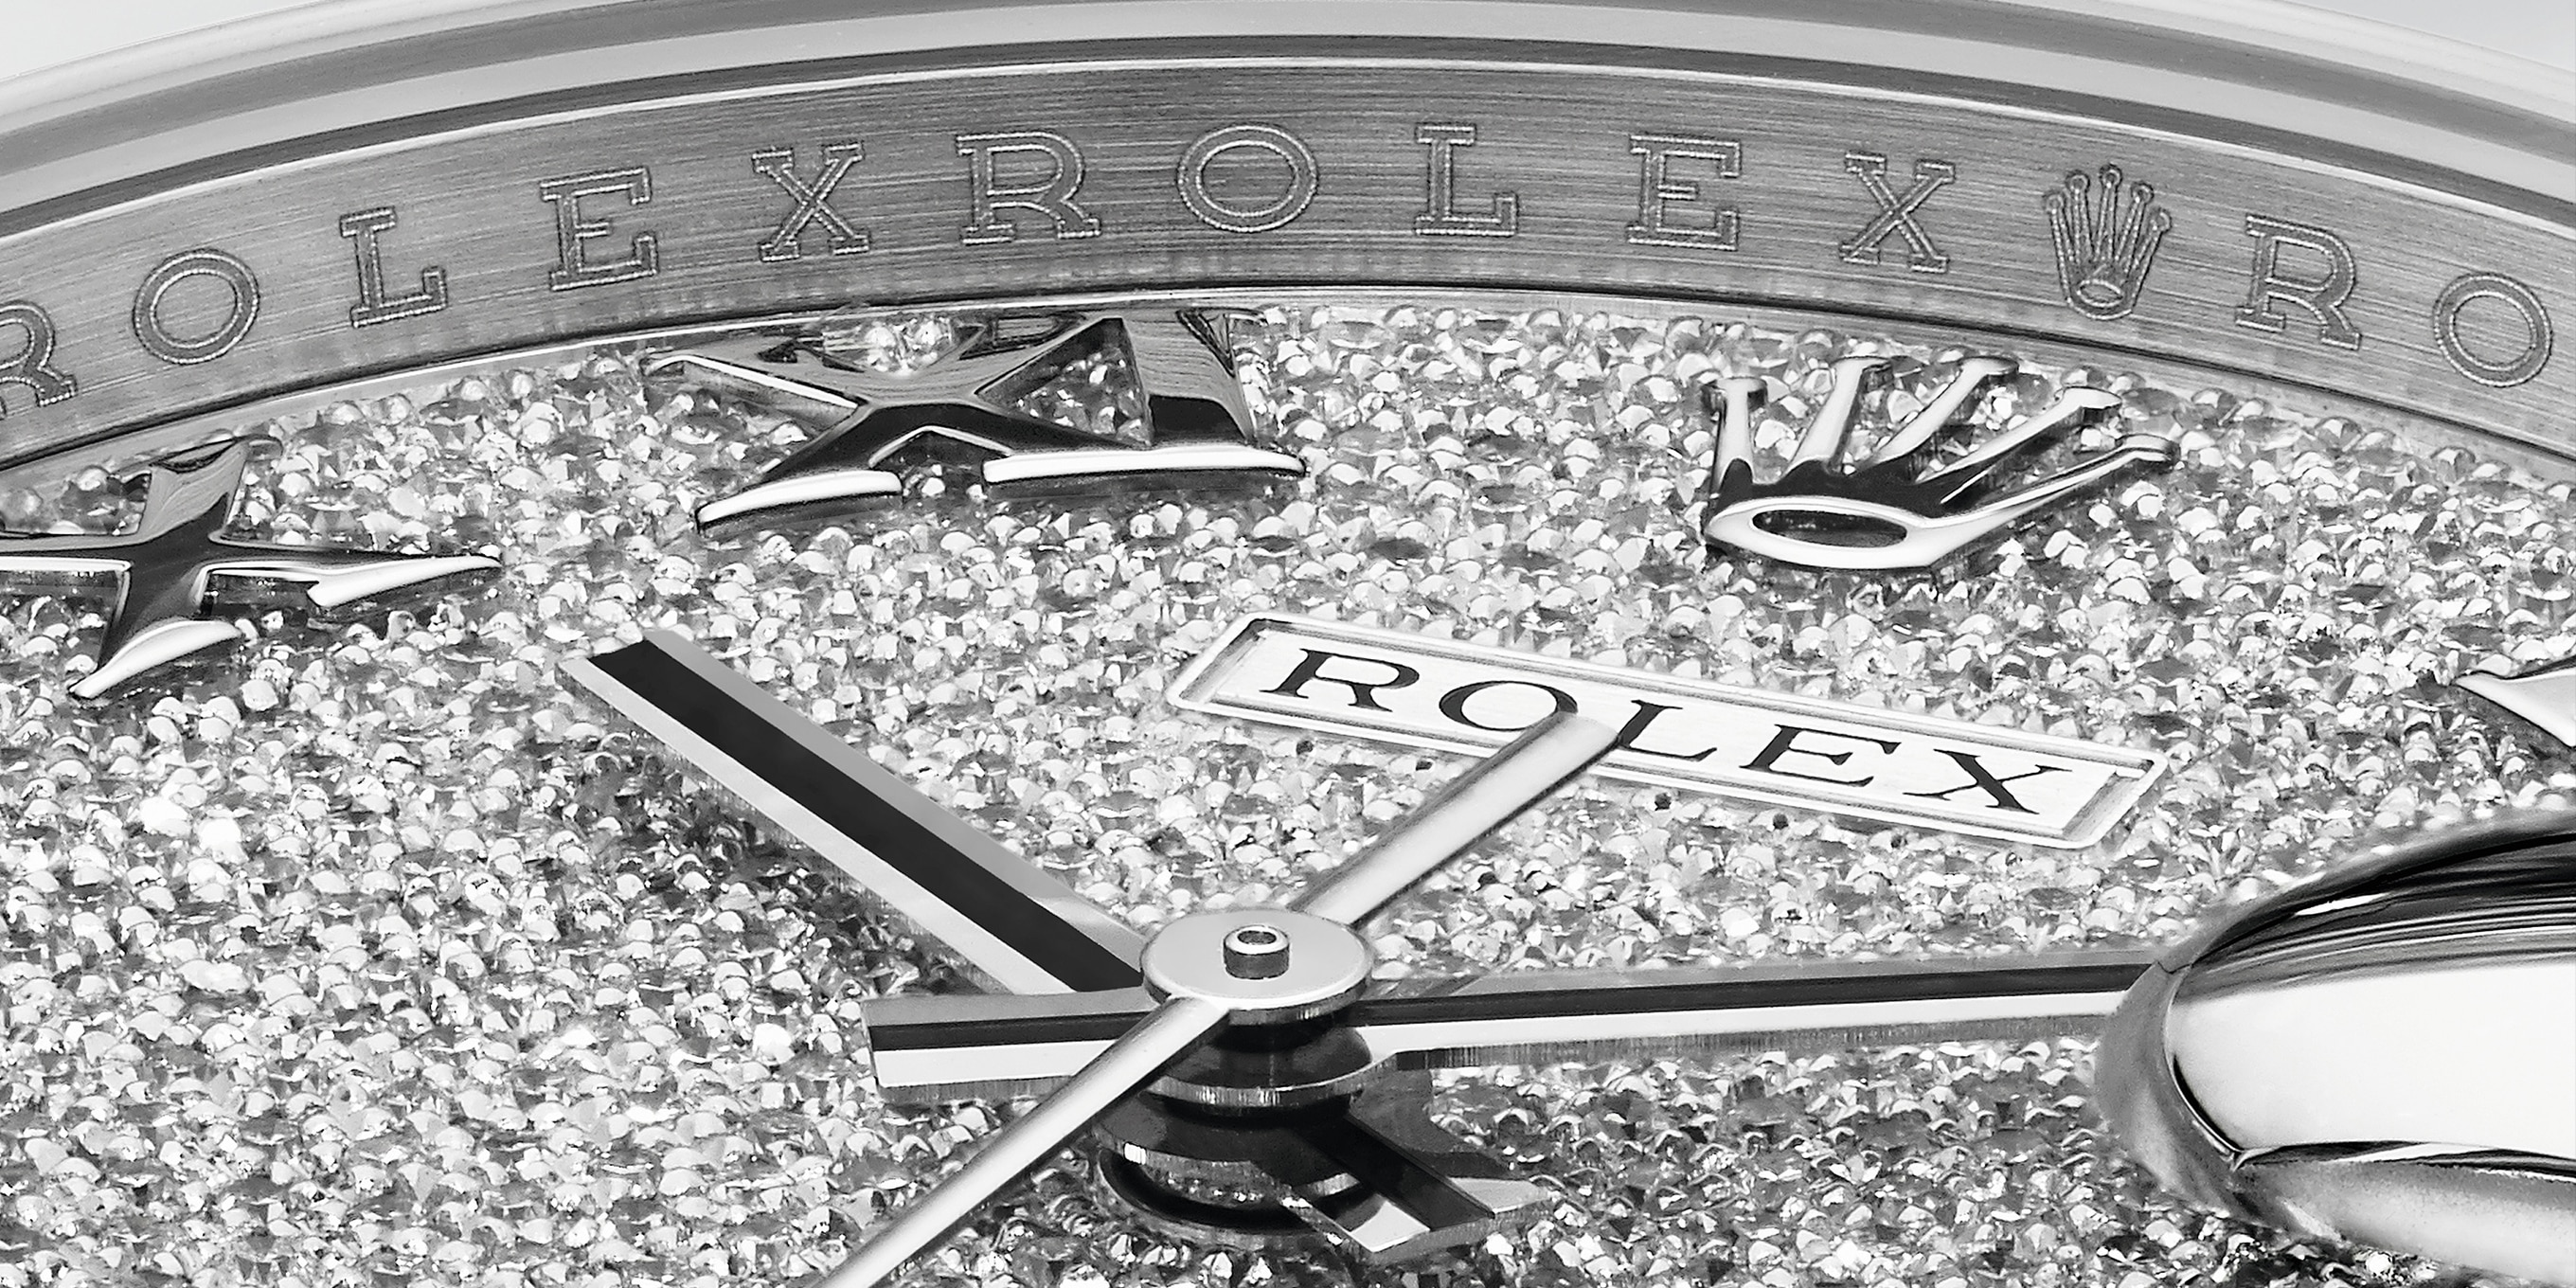 Rolex Ladies Rolex Datejust Silver Diamond 18k White Gold & Stainless Steel Watch